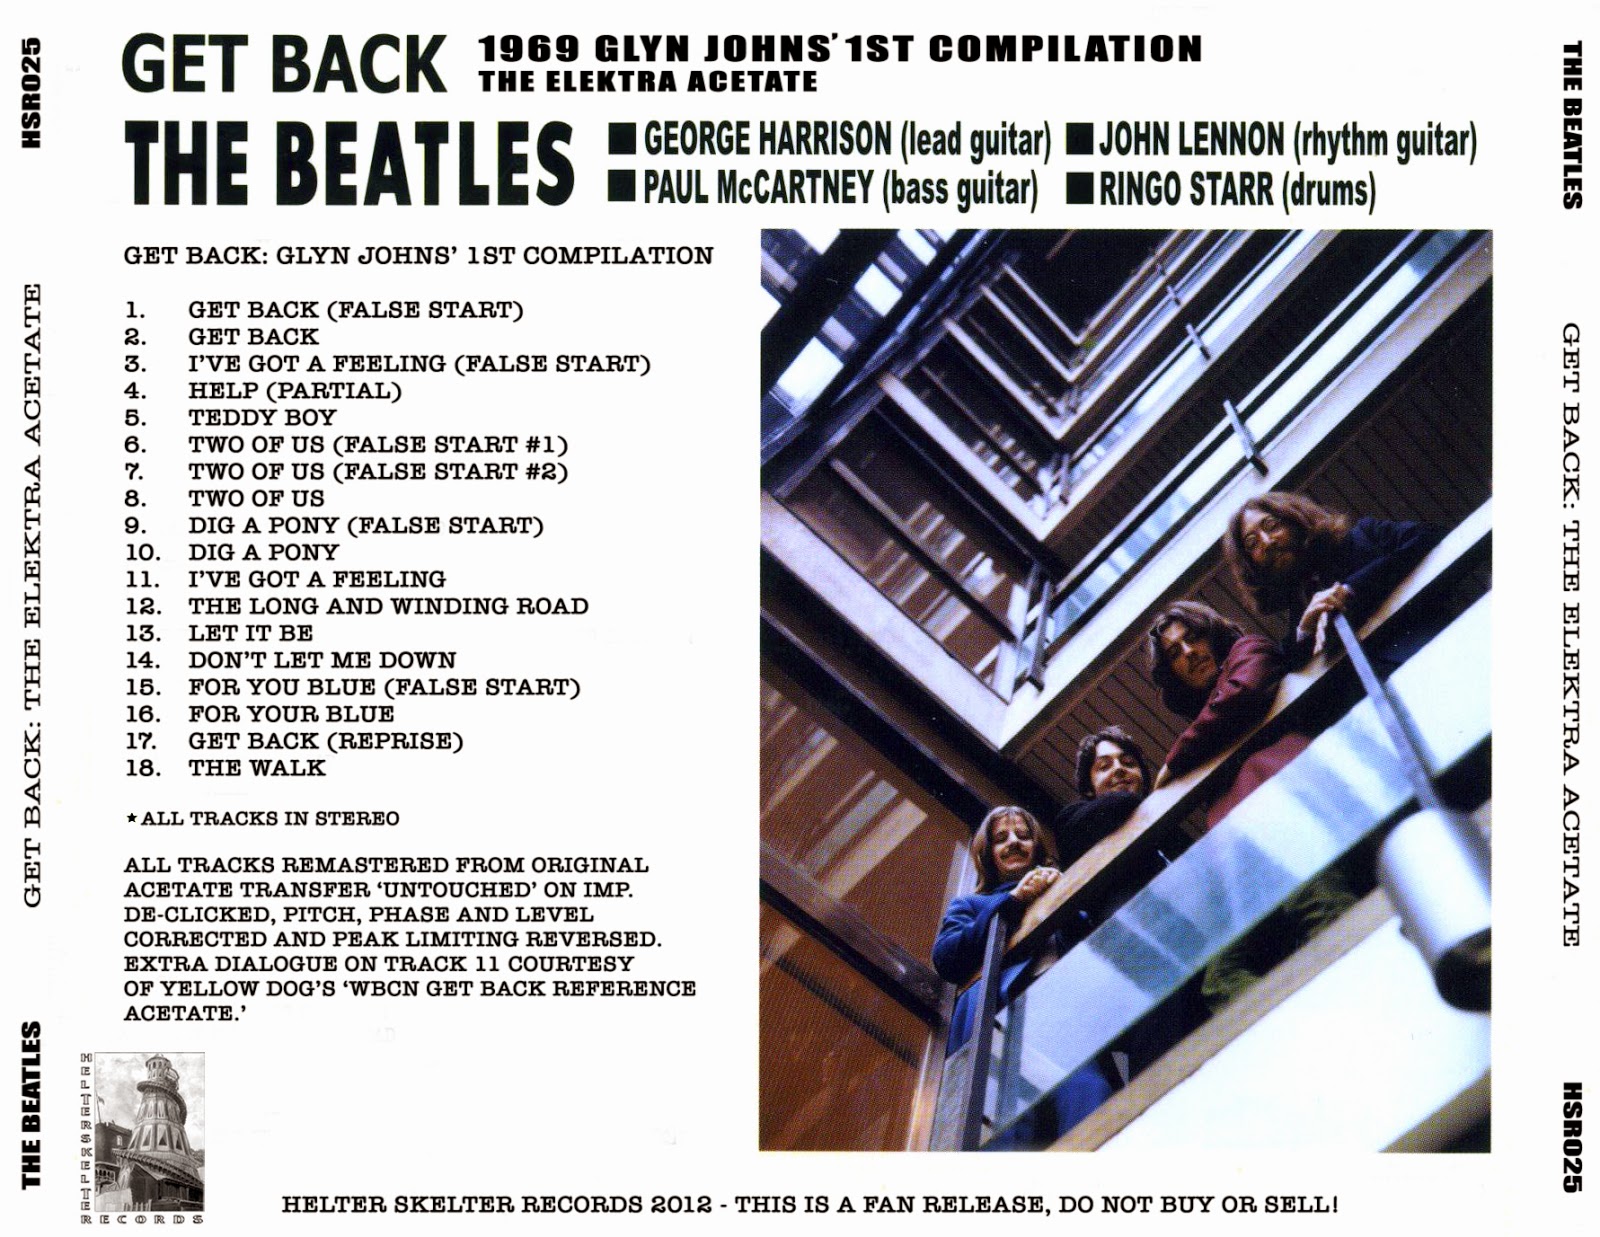 Say get back. The Beatles get back. The Beatles: get back обложка. Обложки альбомов the Beatles -get back. The Beatles get back обложка DVD.